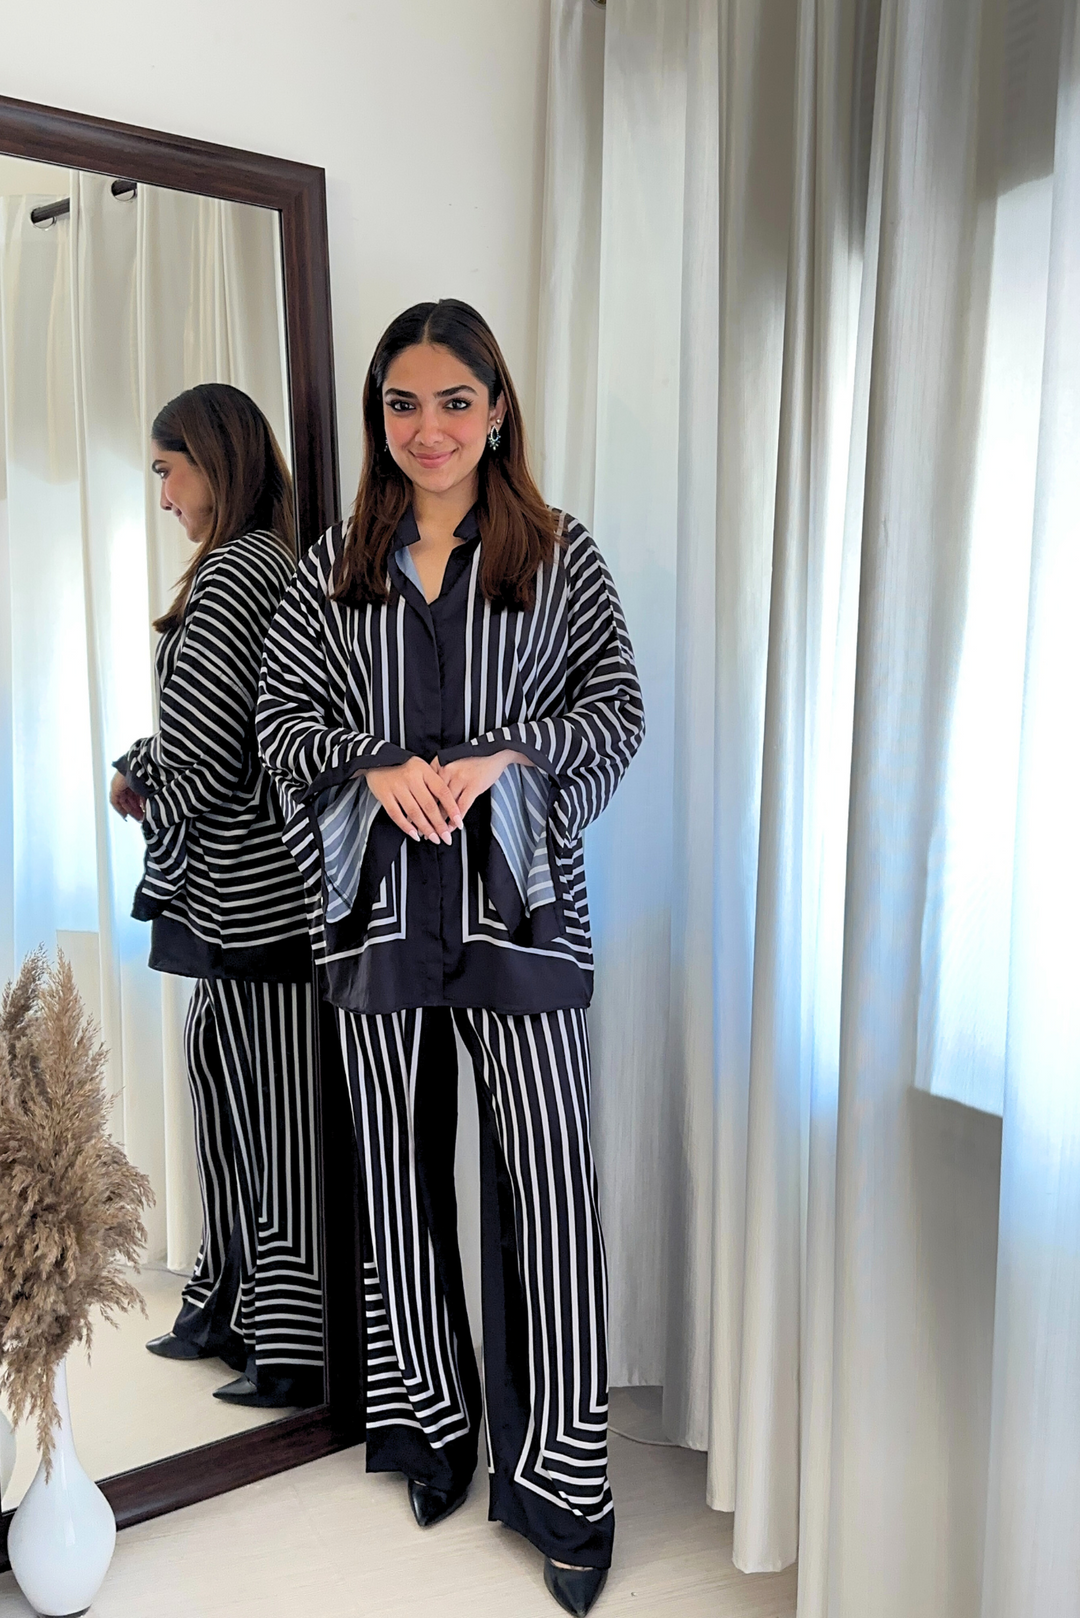 Versatile striped ensemble for women